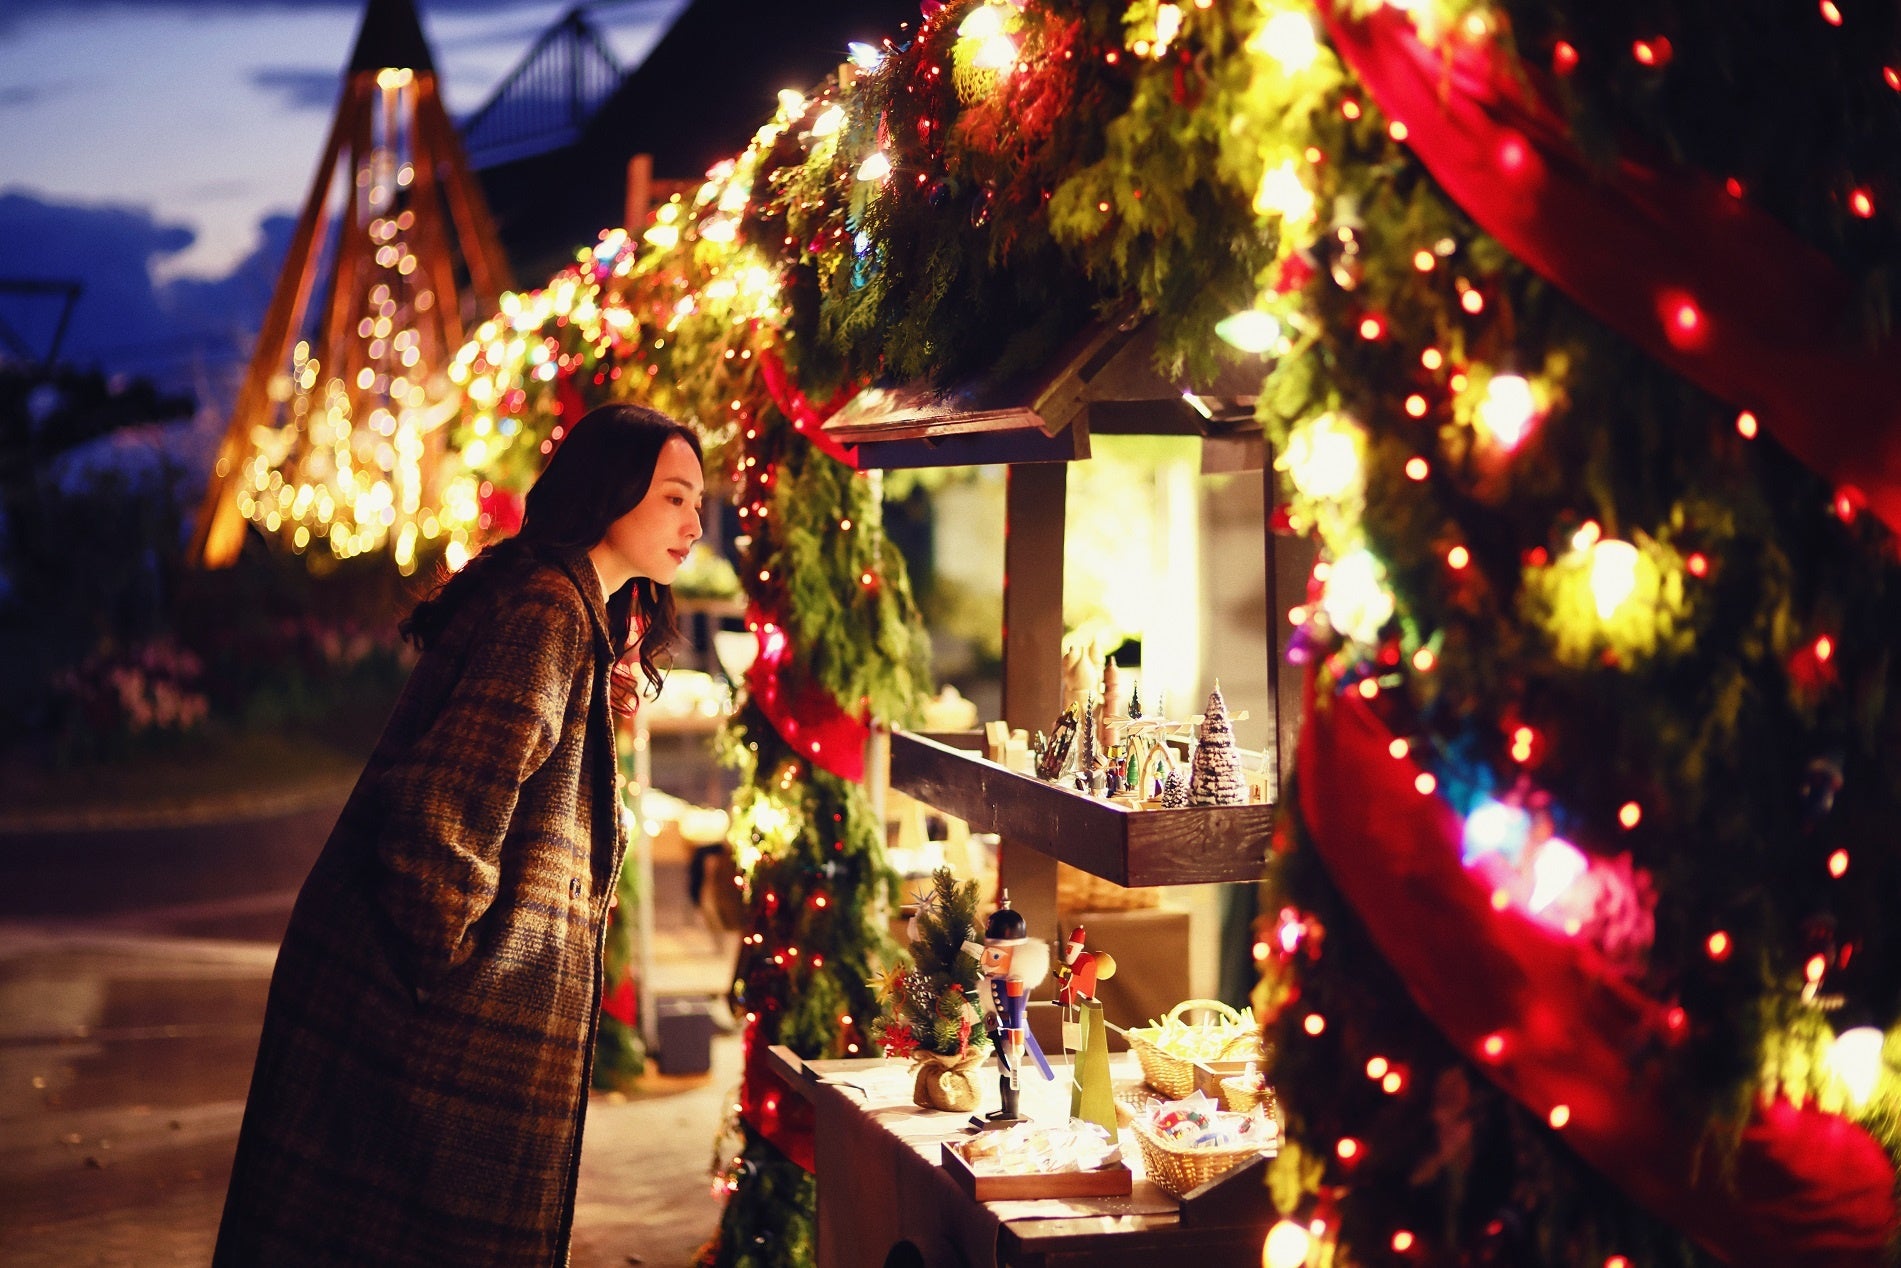 ホテル京阪 京橋 グランデ
レストラン「ロレーヌ」で楽しむクリスマスメニュー
～スイーツビュッフェとディナー ハーフビュッフェ～